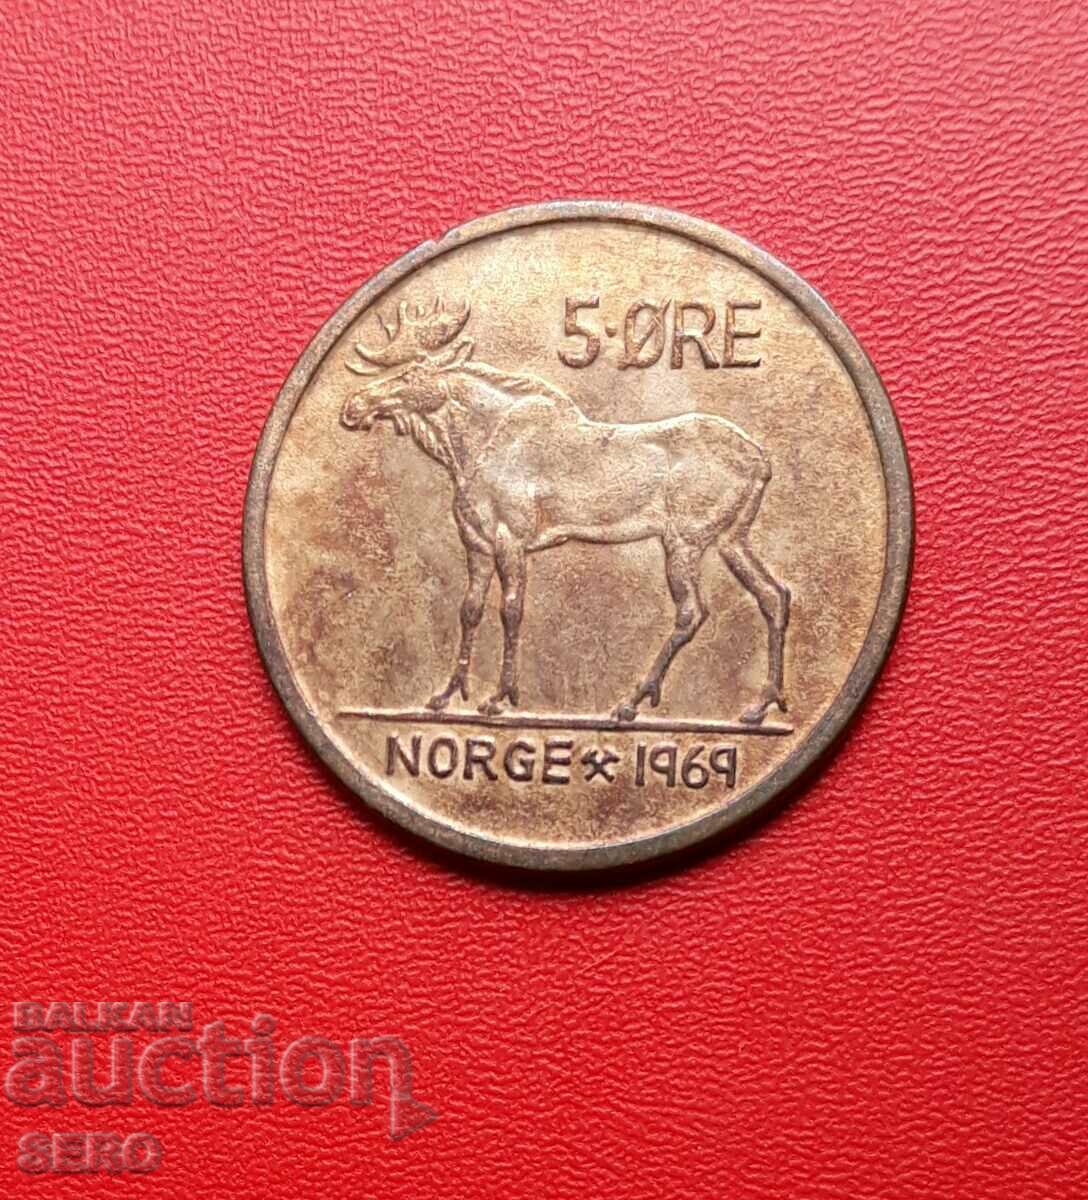 Norway-5 yore 1969